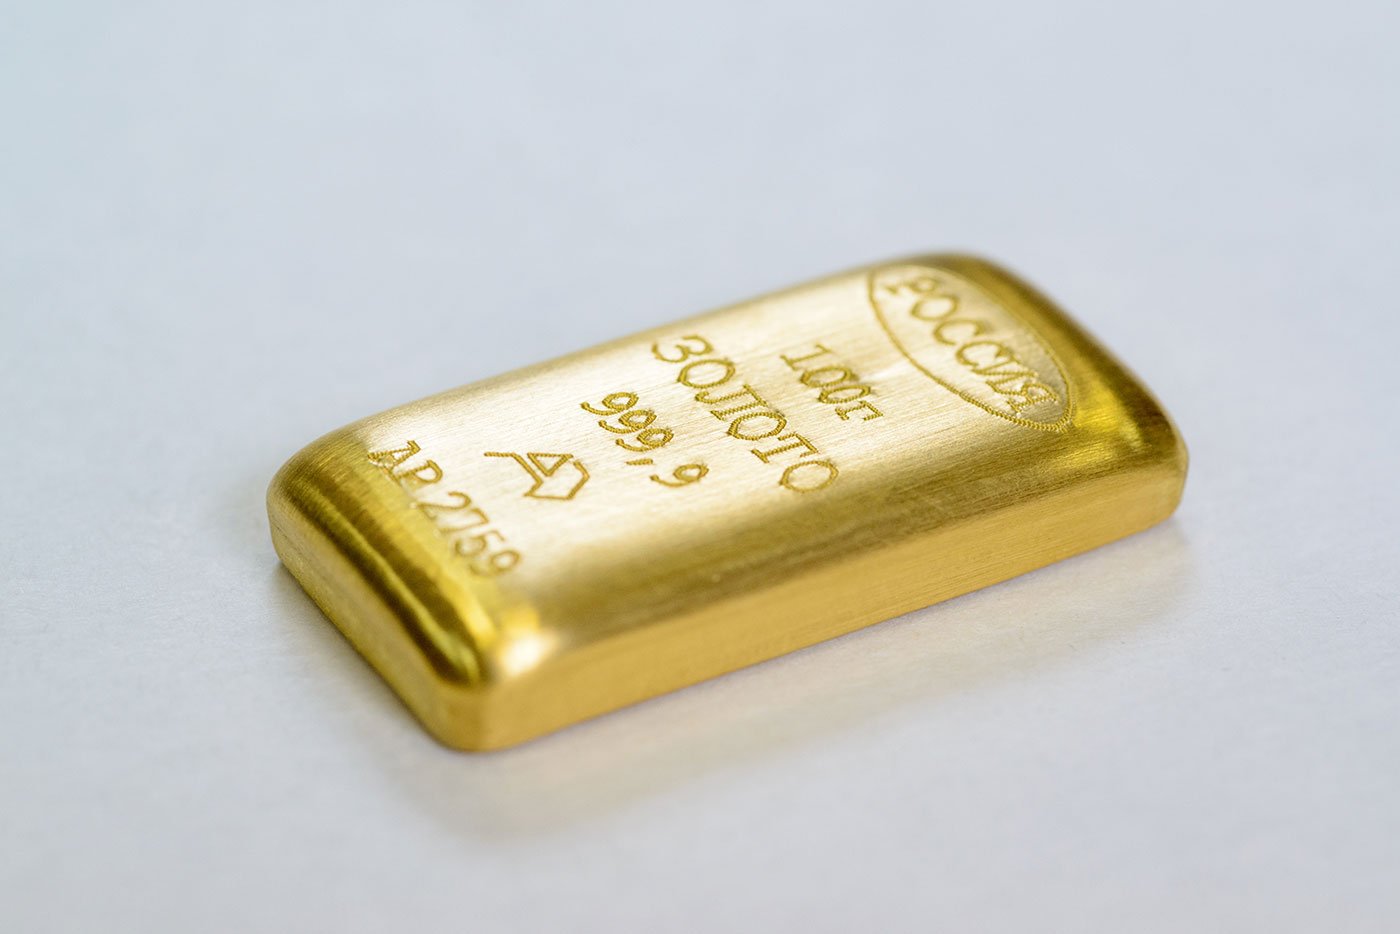 1 5 г золота. 100 Граммовый слиток золота. Слиток 20 гр золота. Золото слиток 10гр. 10 Граммовый слиток золота.